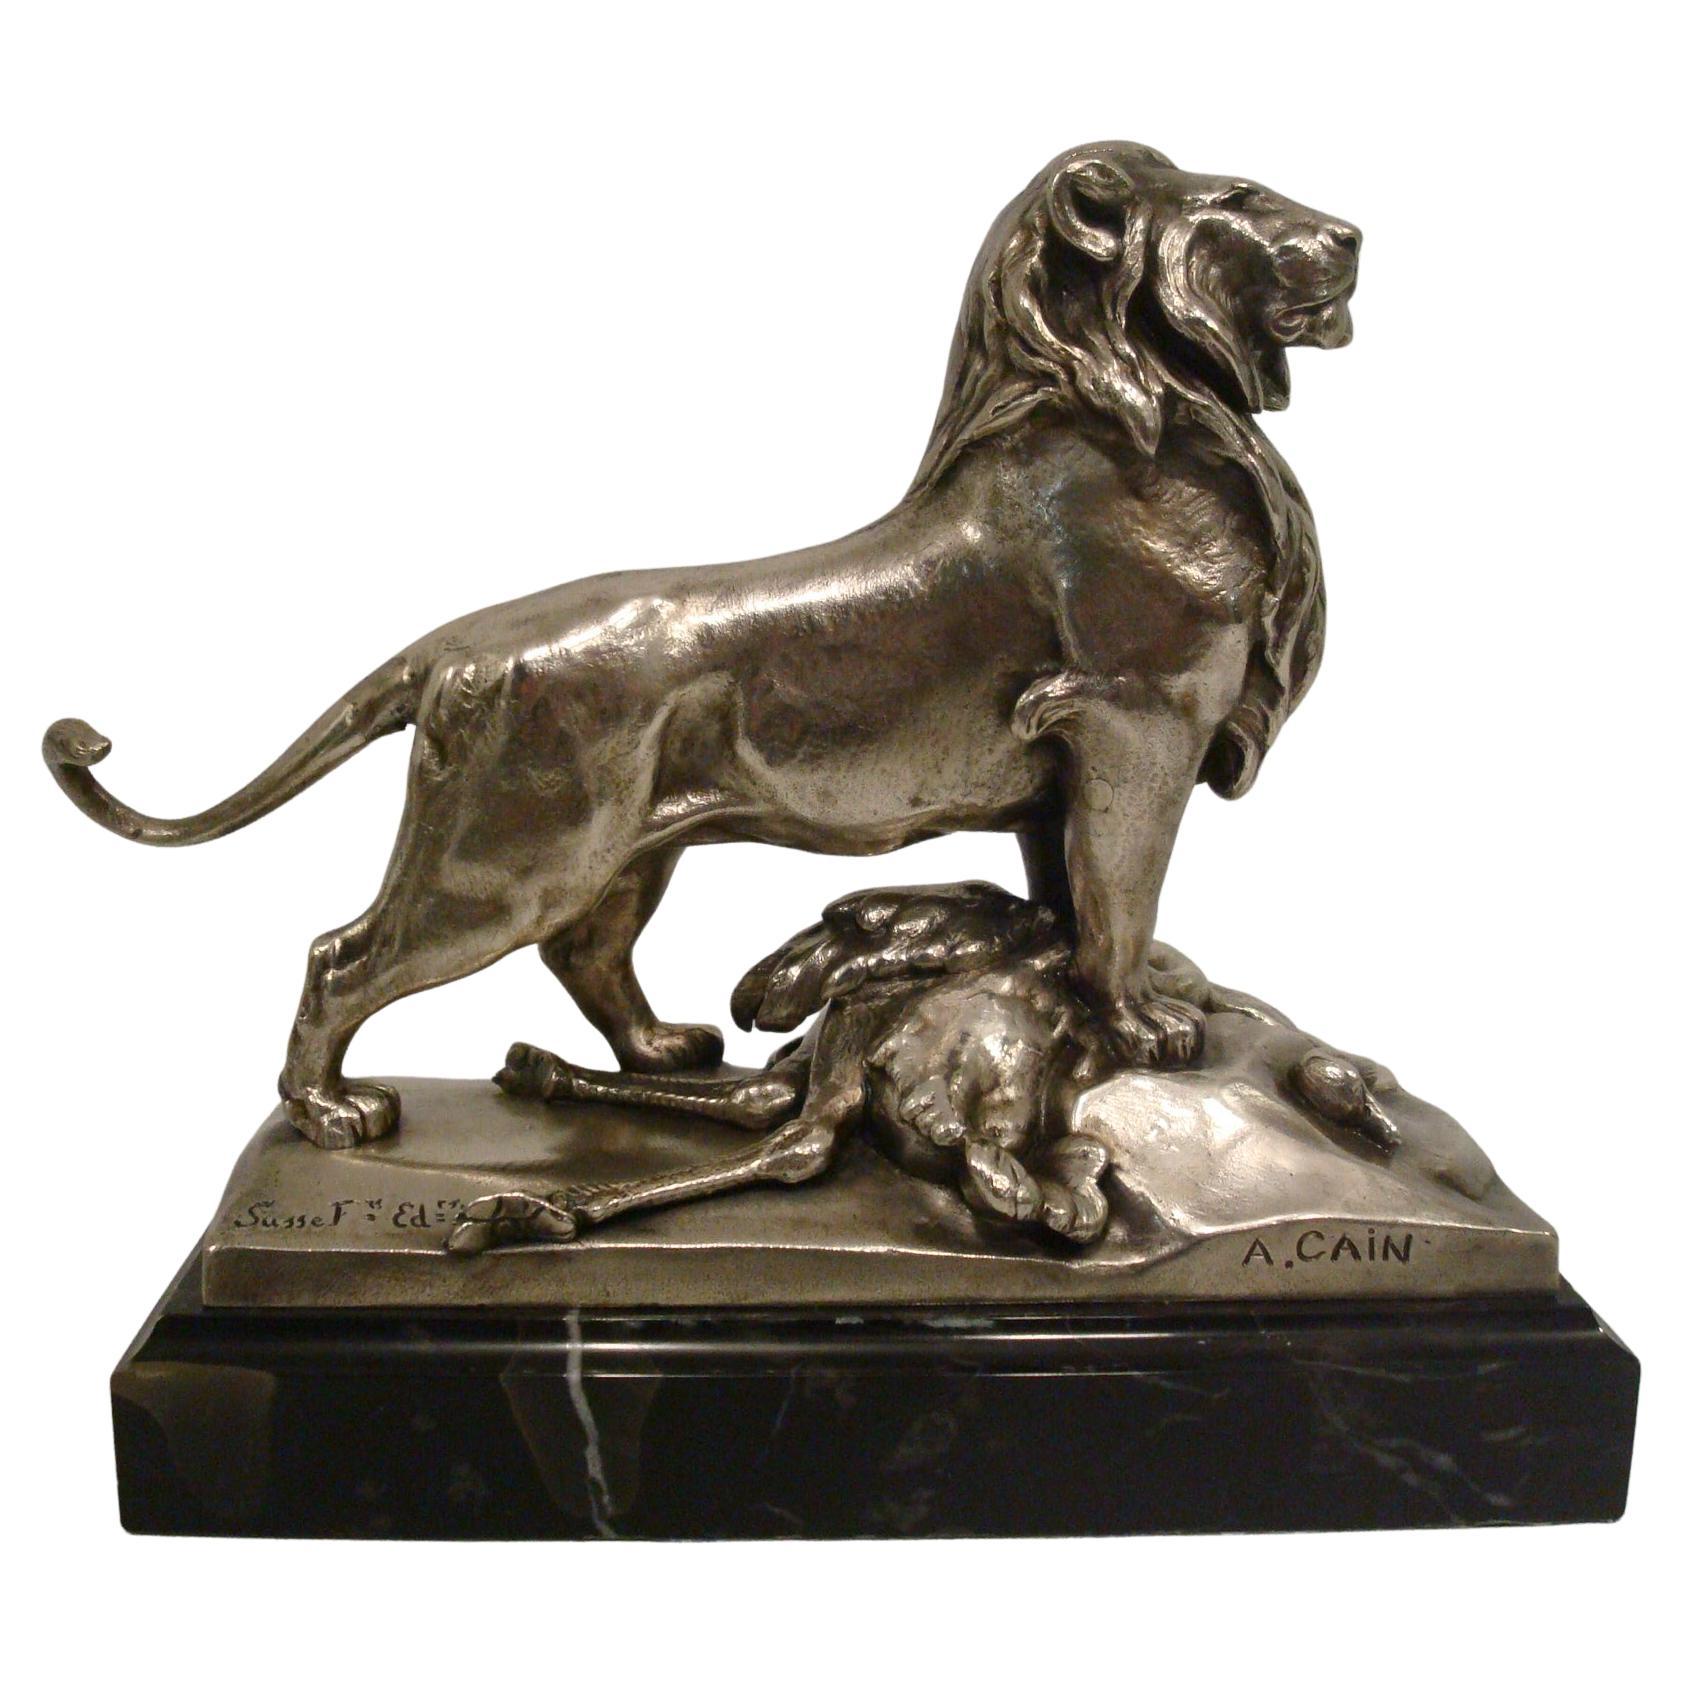 Auguste Cain - Sculpture de lion et d'autruche en bronze argenté du 19ème siècle.